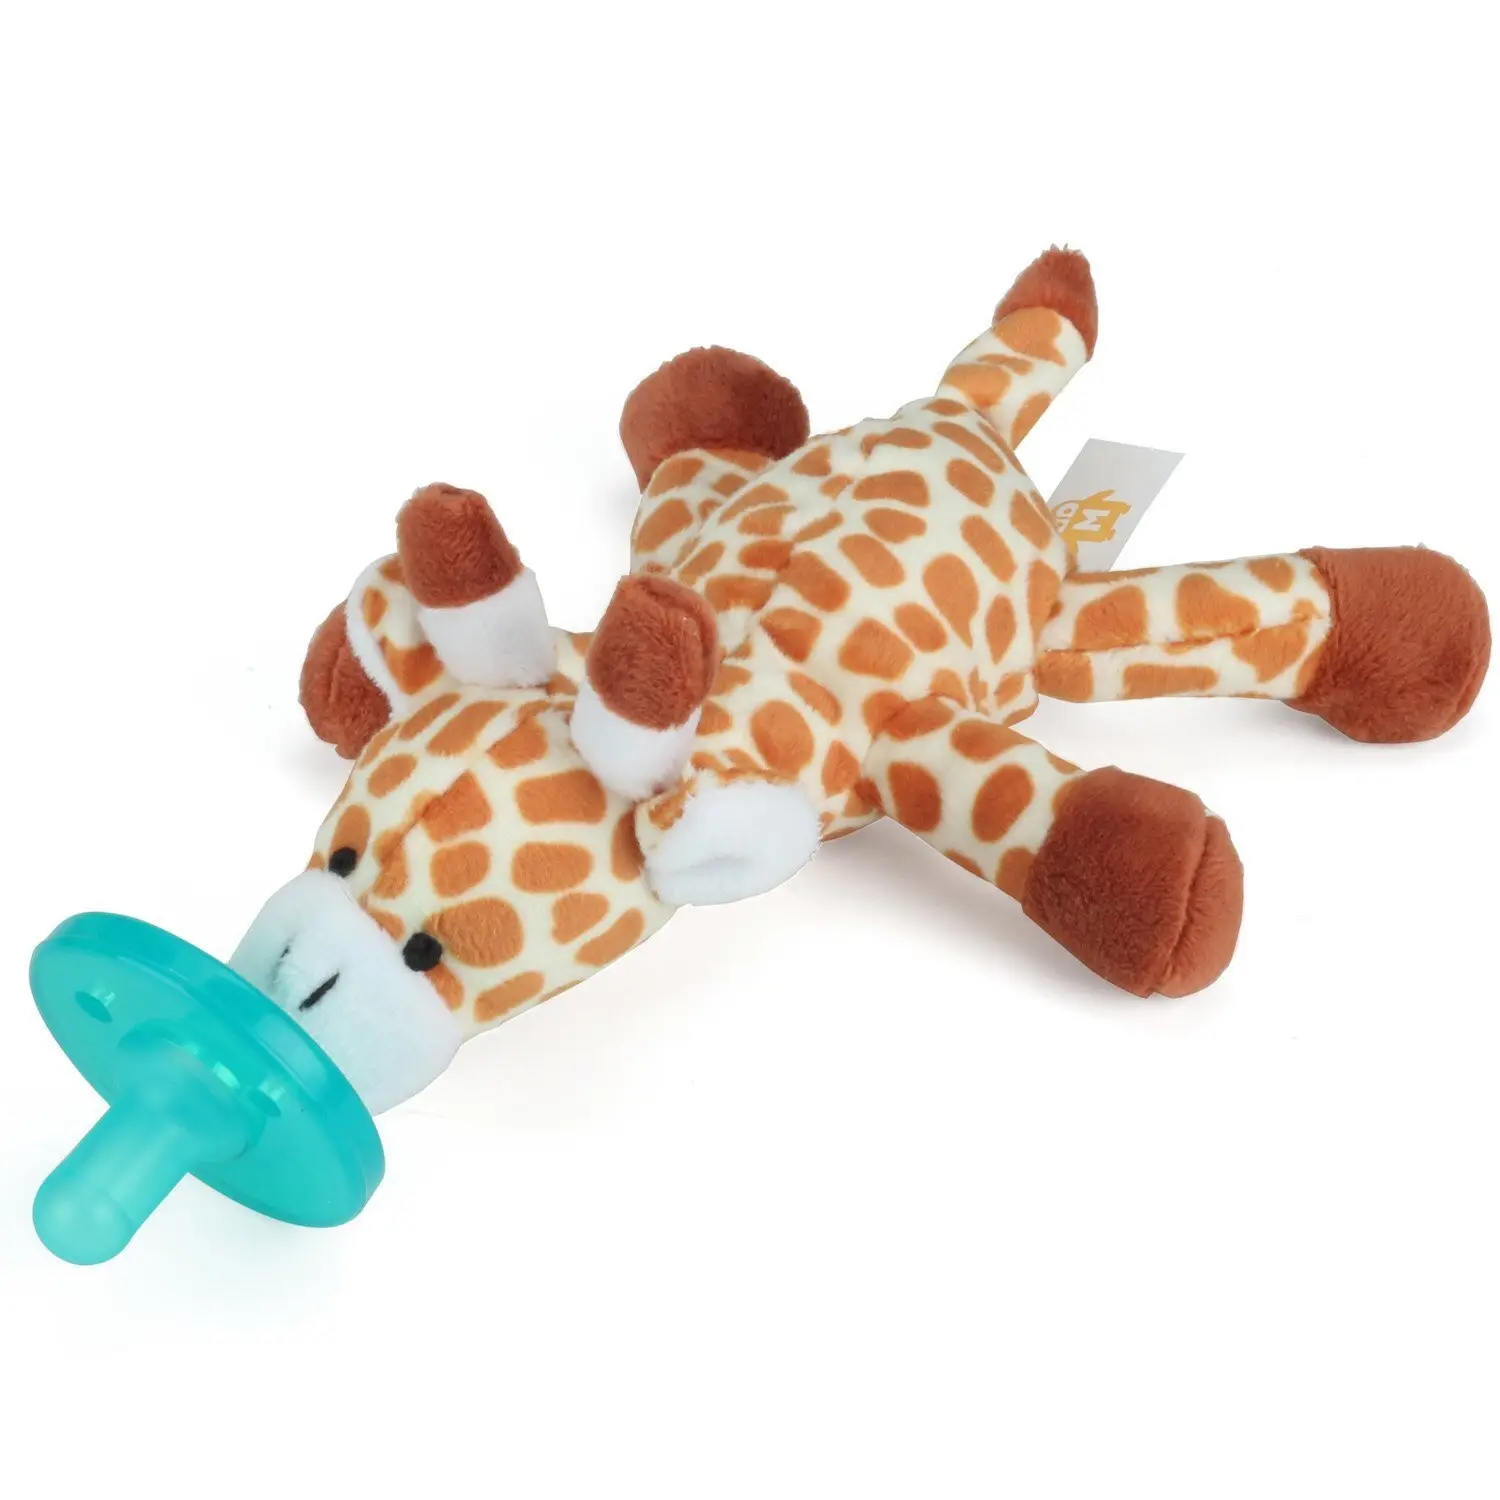 Atacado bebê removível recheado animal bebê chupeta silicone chupeta infantil girafa pelúcia chupeta